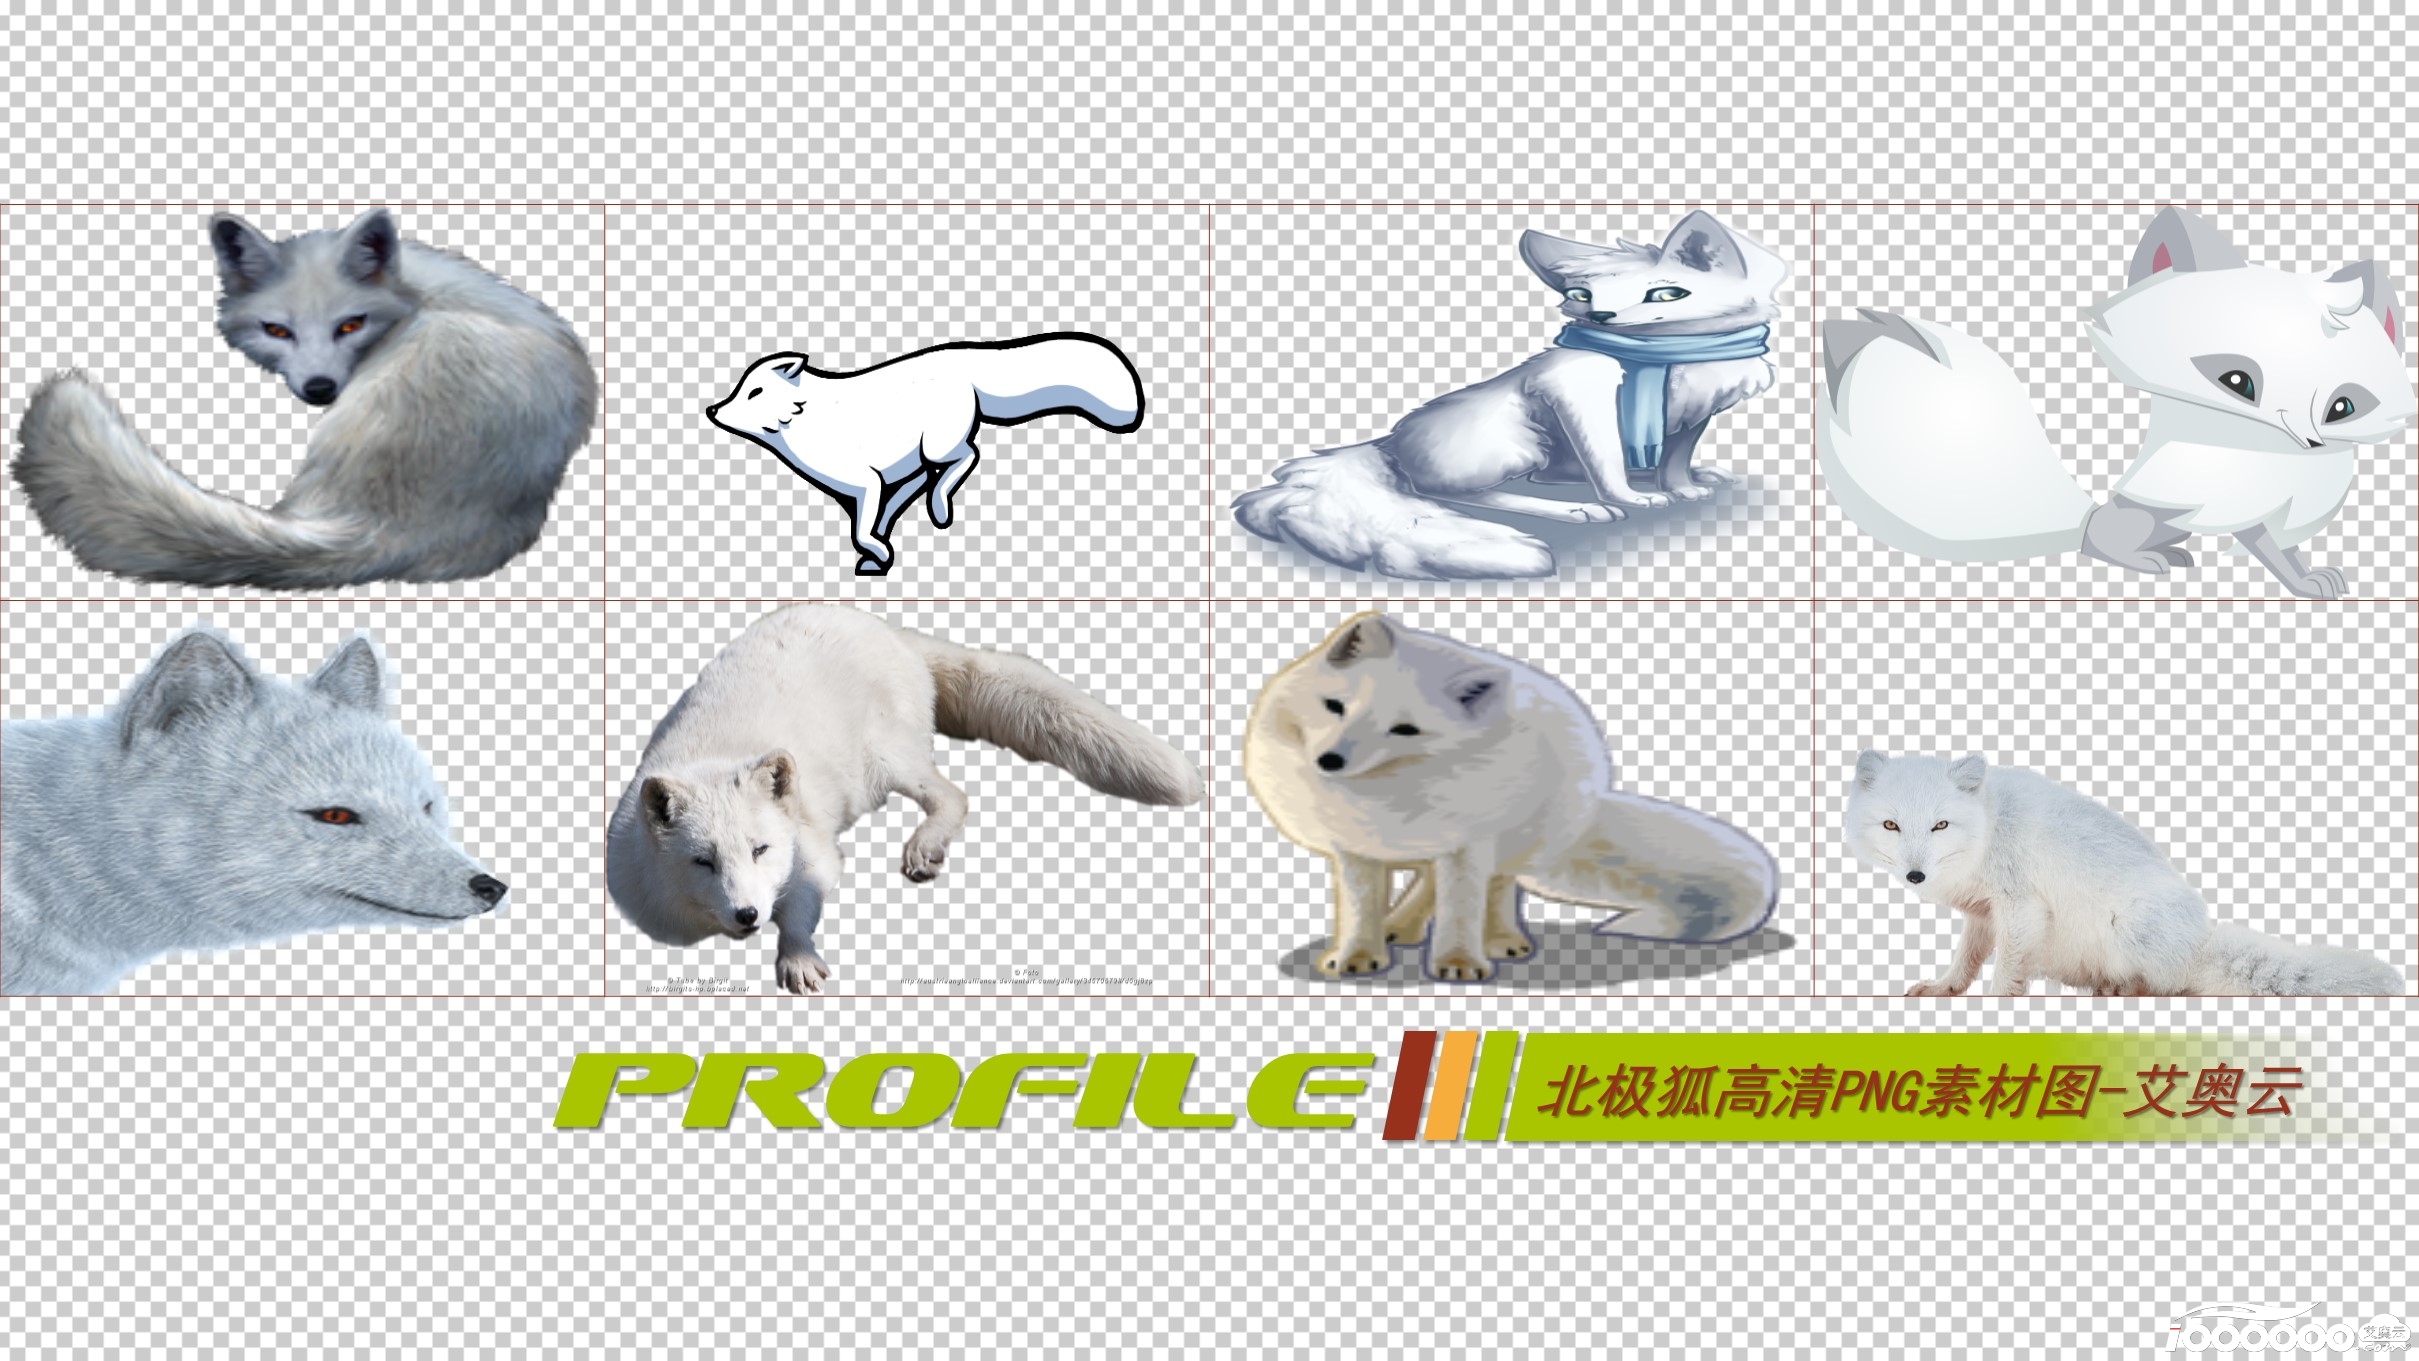 北极狐高清png透明图片图形素材打包免费下载 (2).JPG